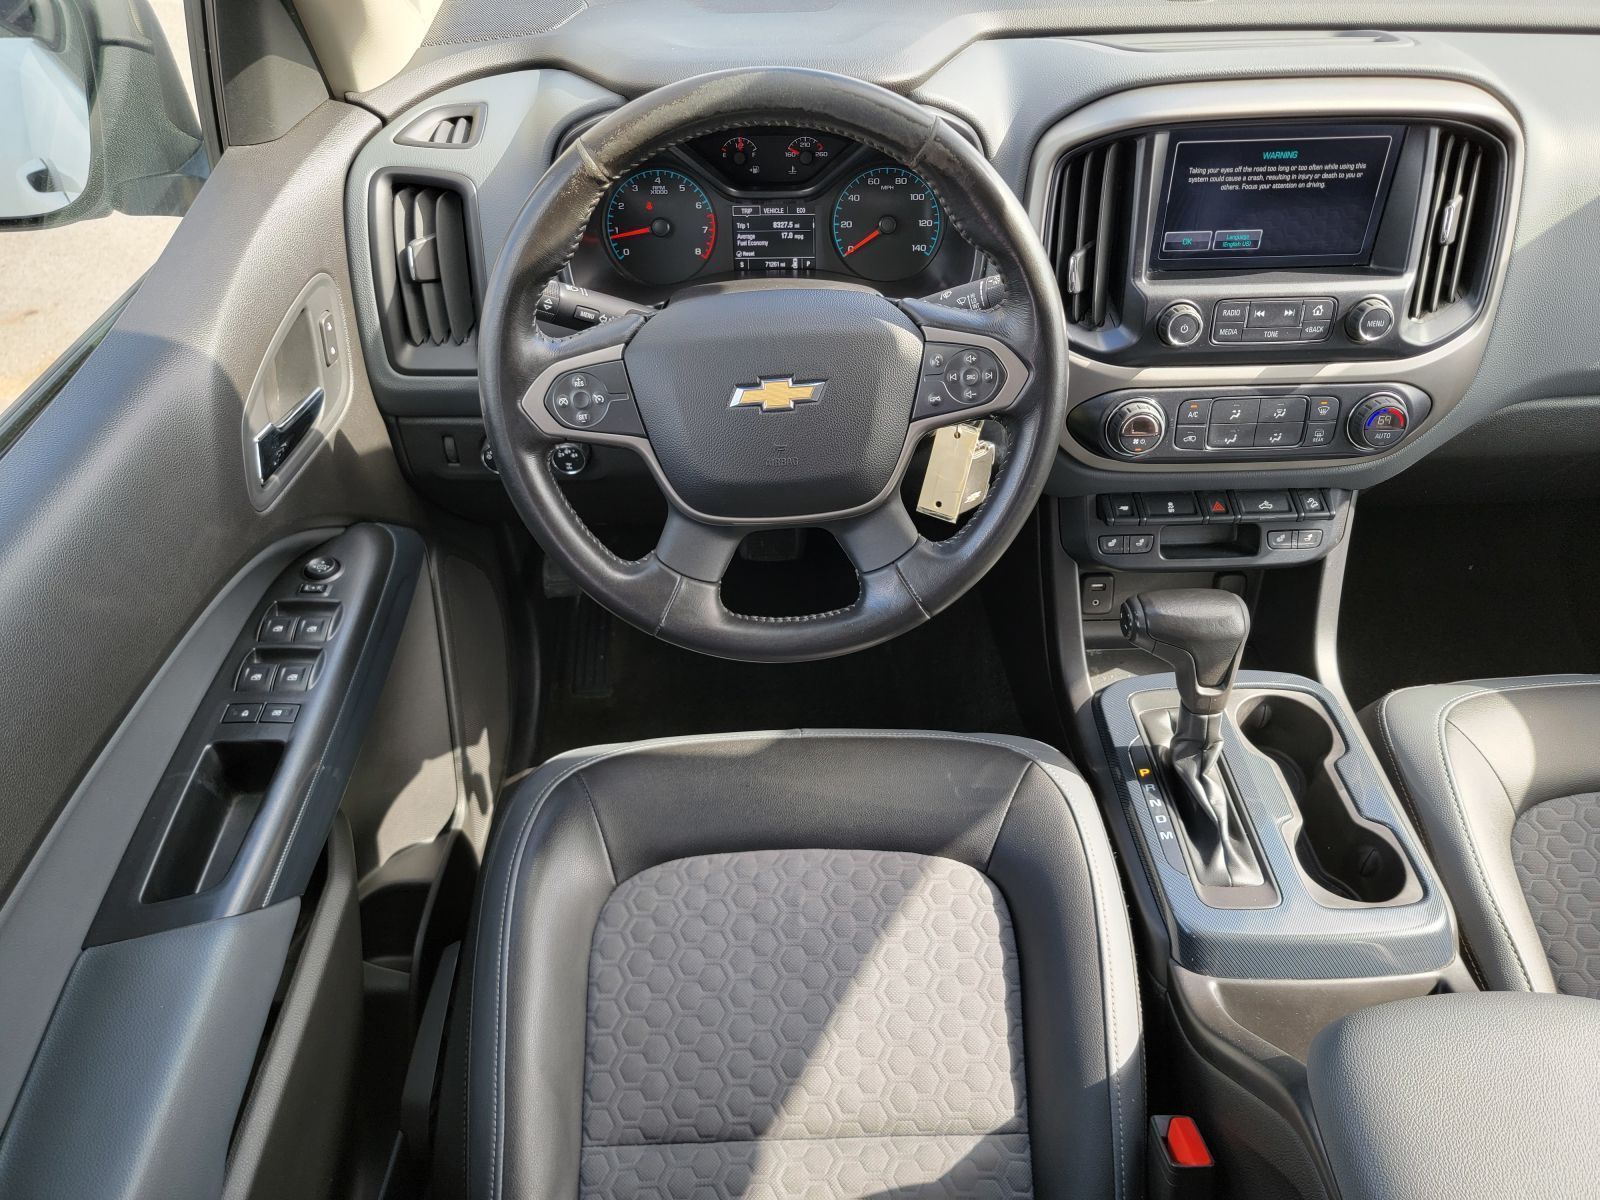 Used, 2015 Chevrolet Colorado 4WD Crew Cab 128.3